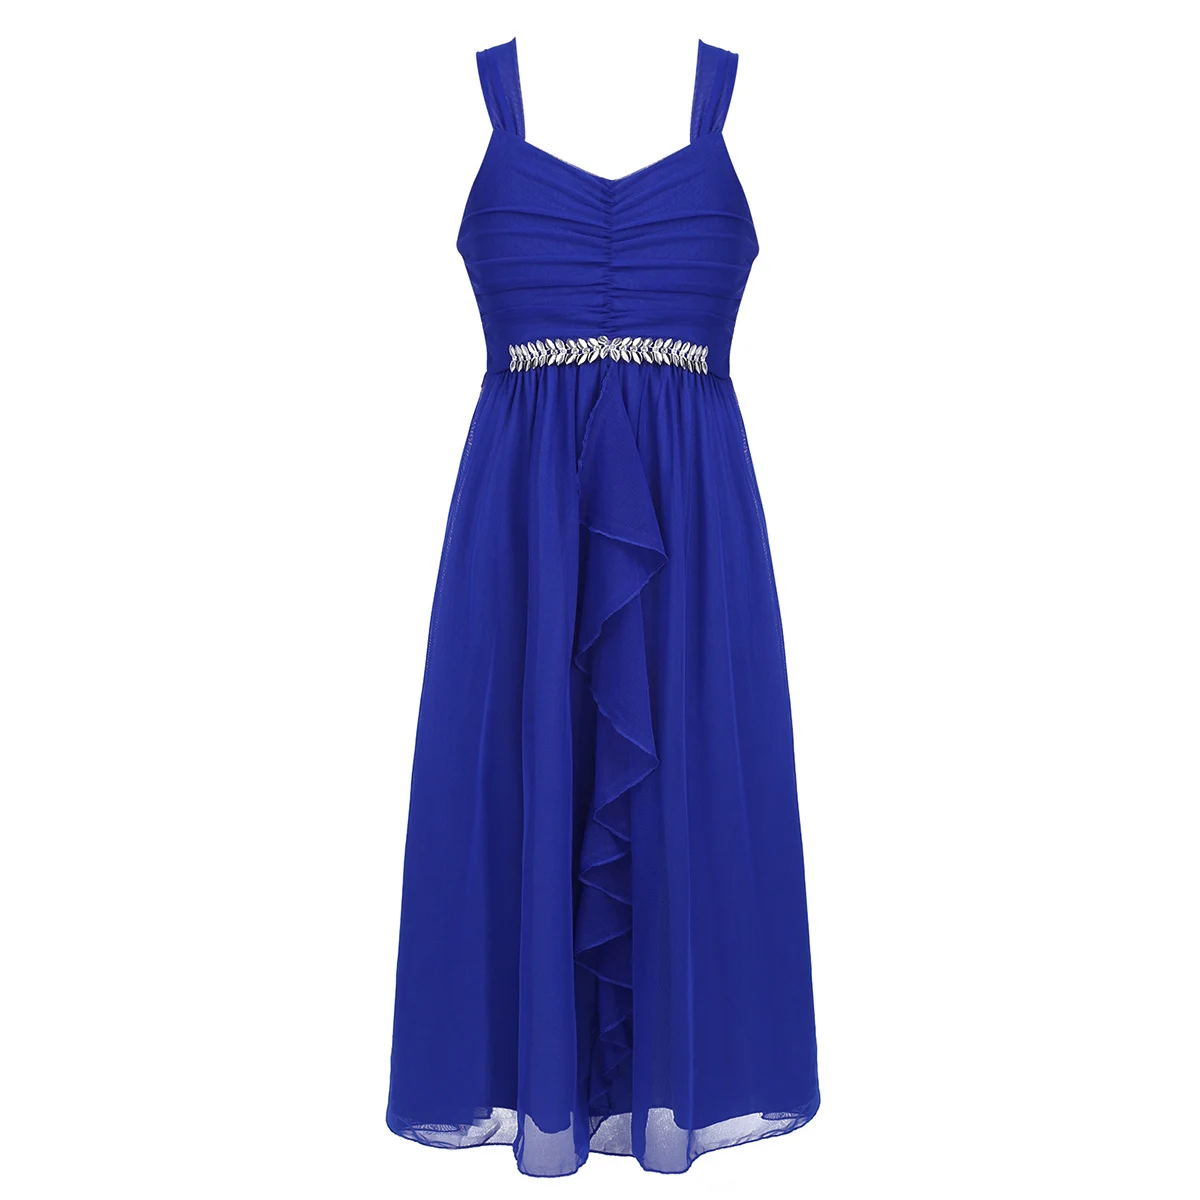 Iiniim/красивое детское платье с рюшами; отделка стразами; платье с цветочным узором для девочек; костюмы принцессы; праздничное платье на свадьбу - Цвет: Blue